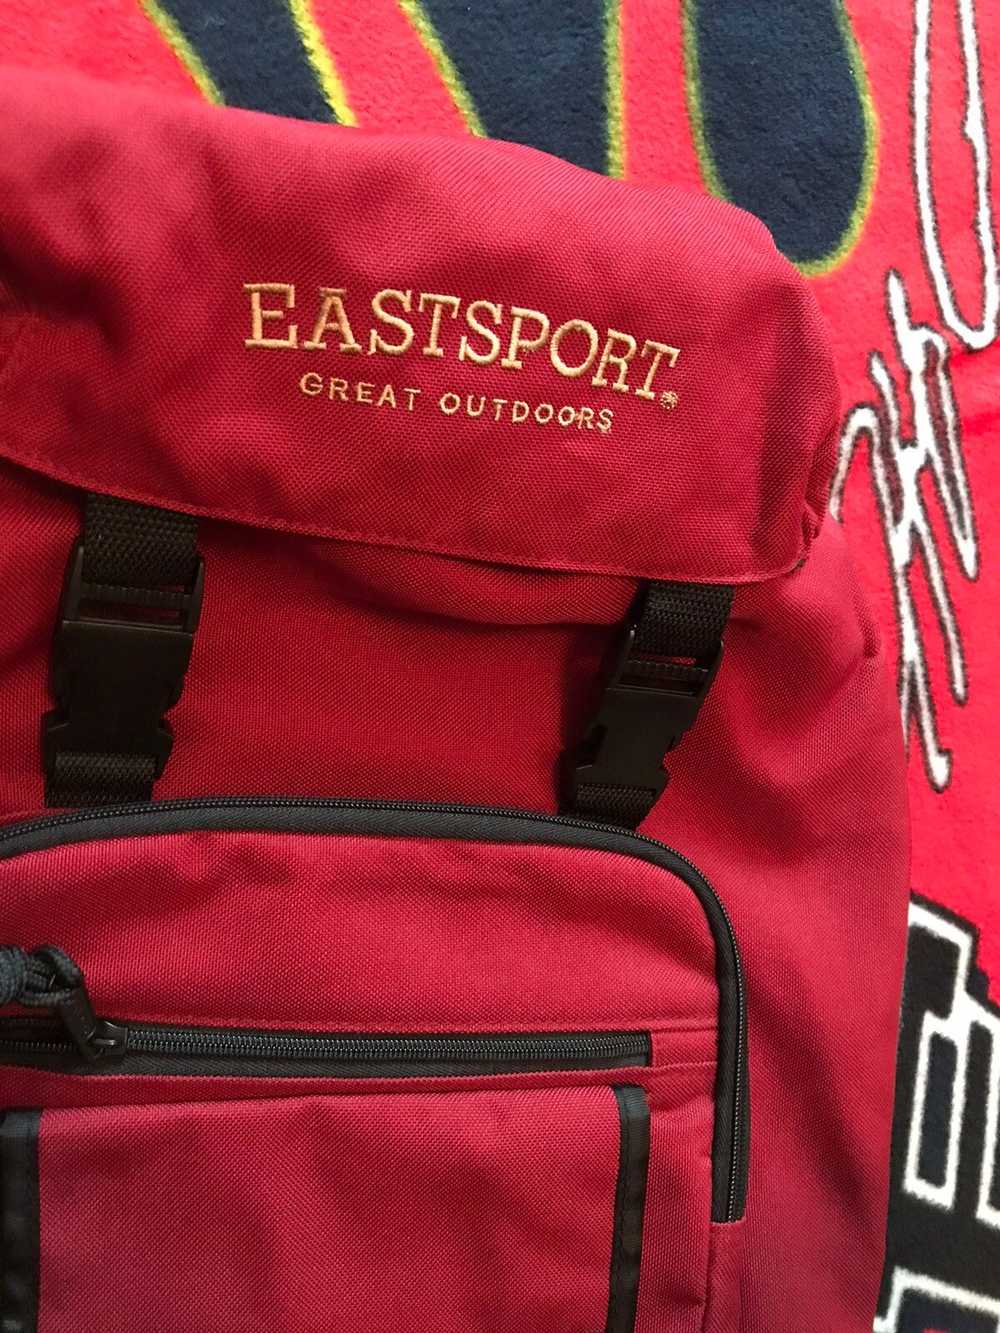 Bag × Vintage Vintage Eastport Book Bag Backpack - image 3